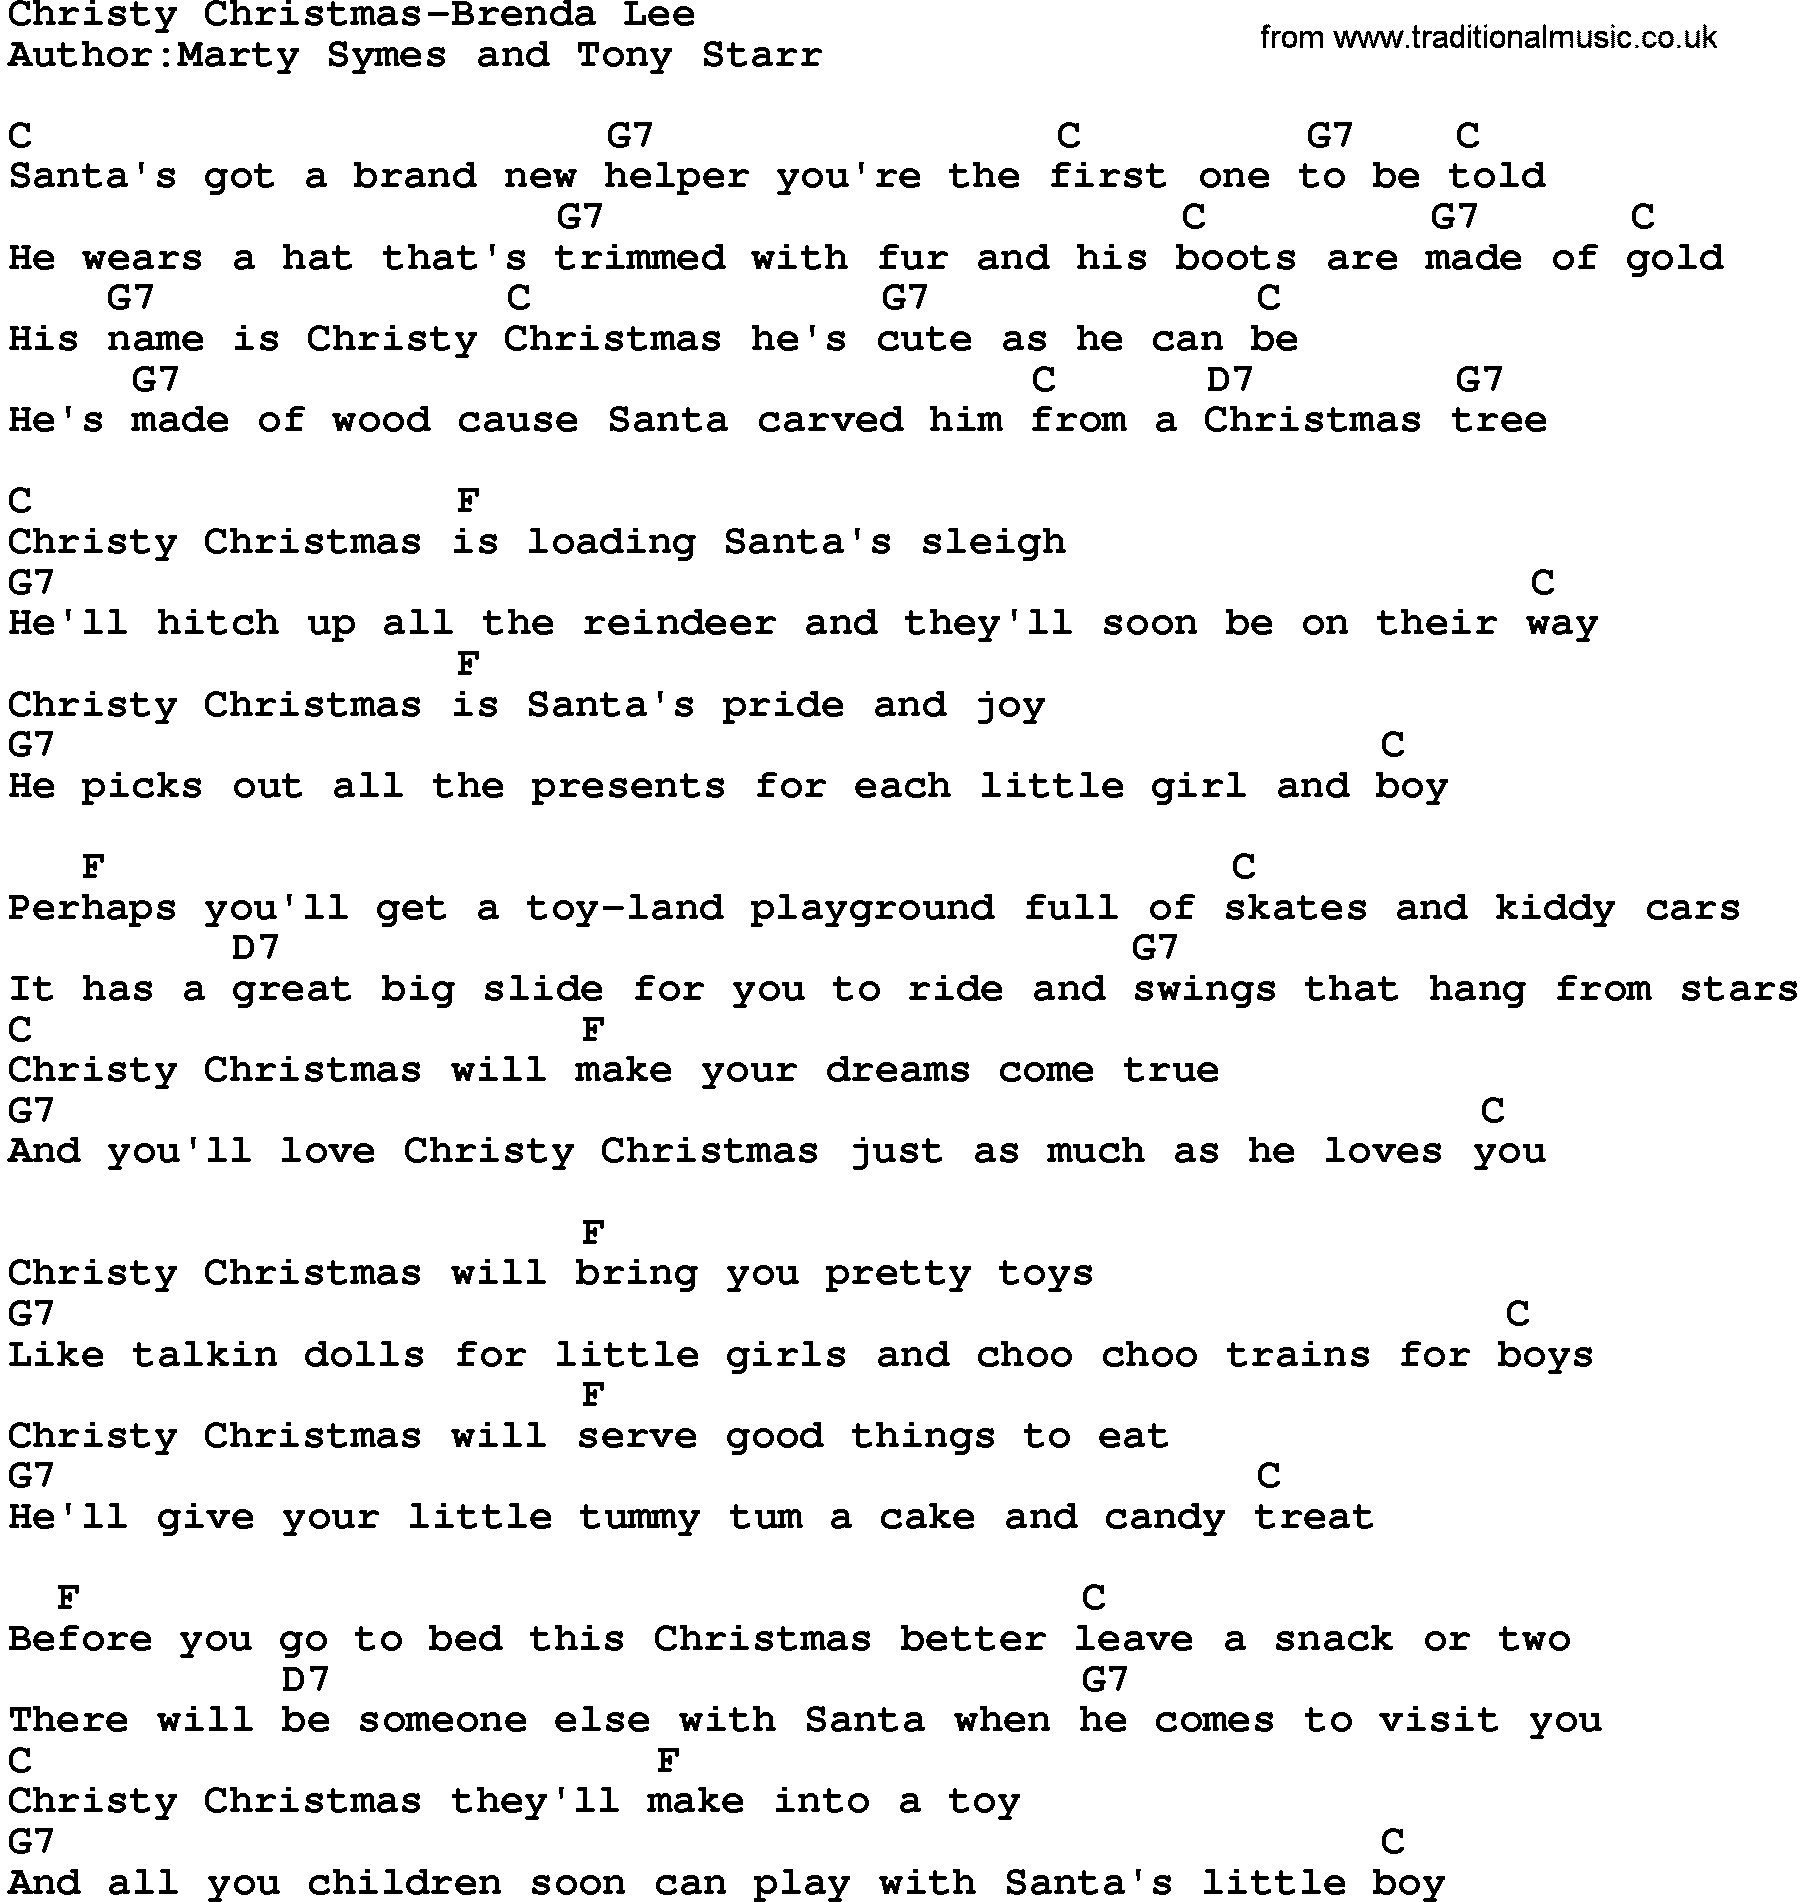 Riptide Ukulele Chords Country Musicchristy Christmas Brenda Lee Lyrics And Chords